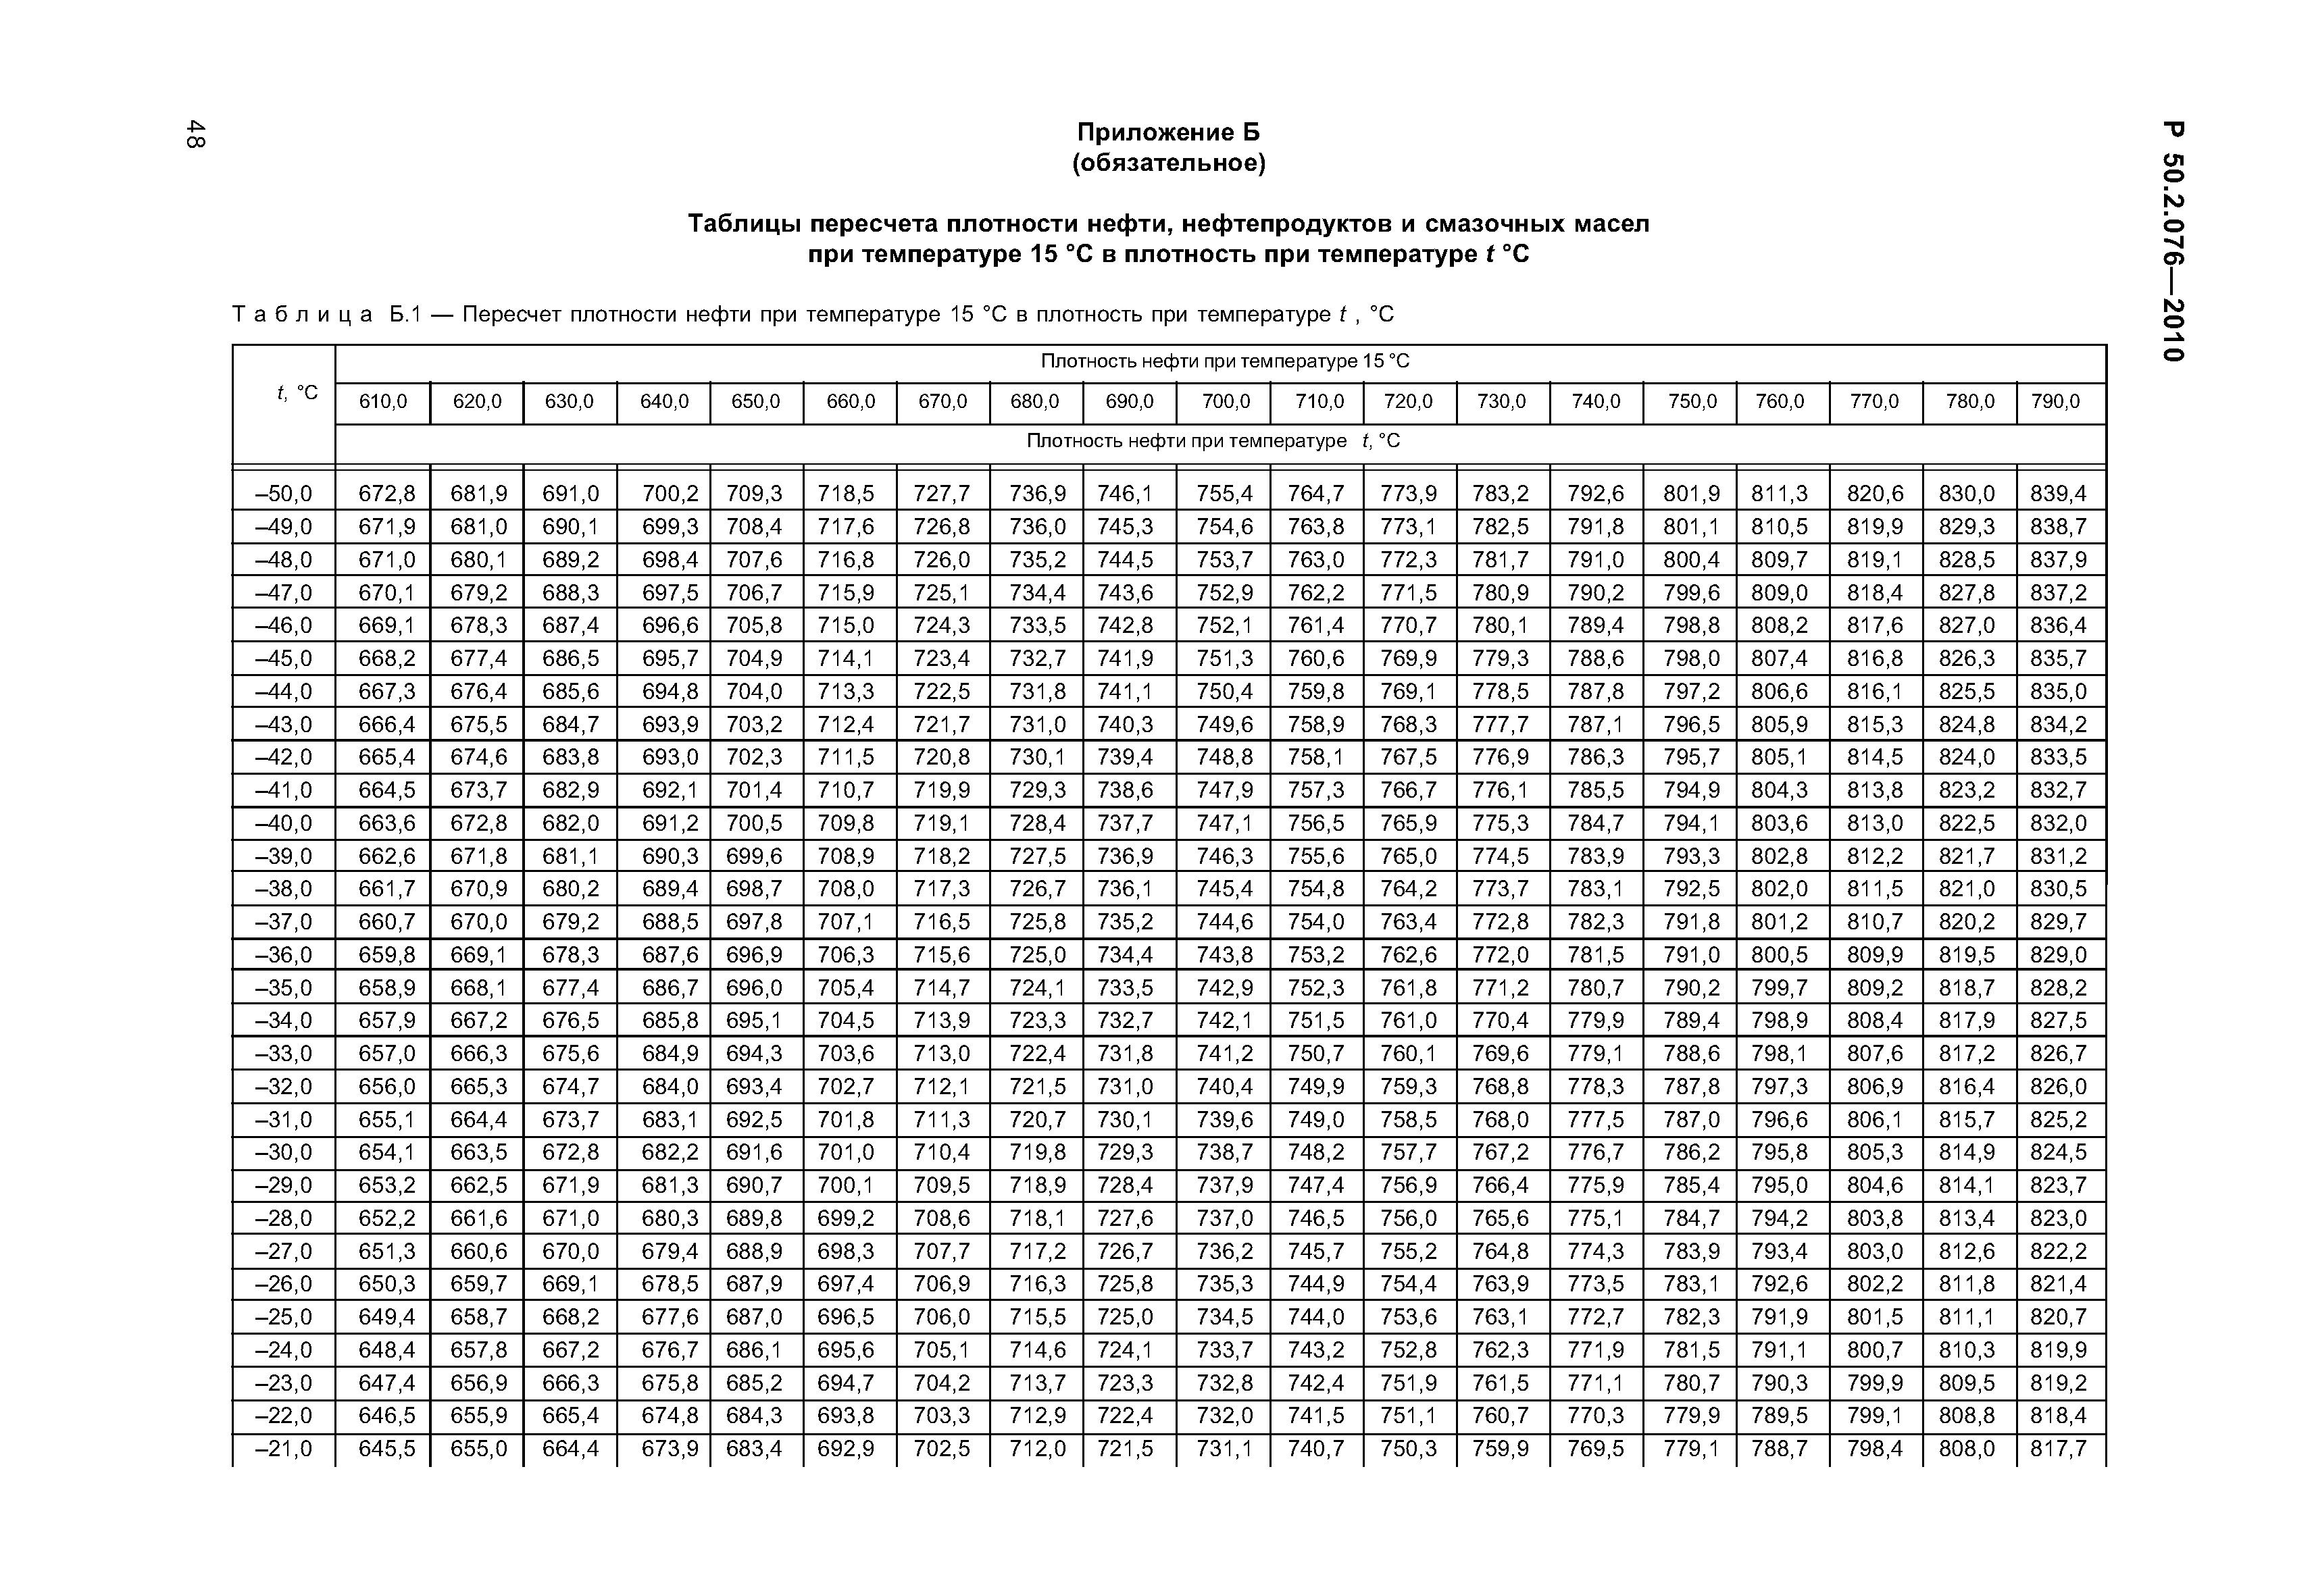 Плотность керосина таблица